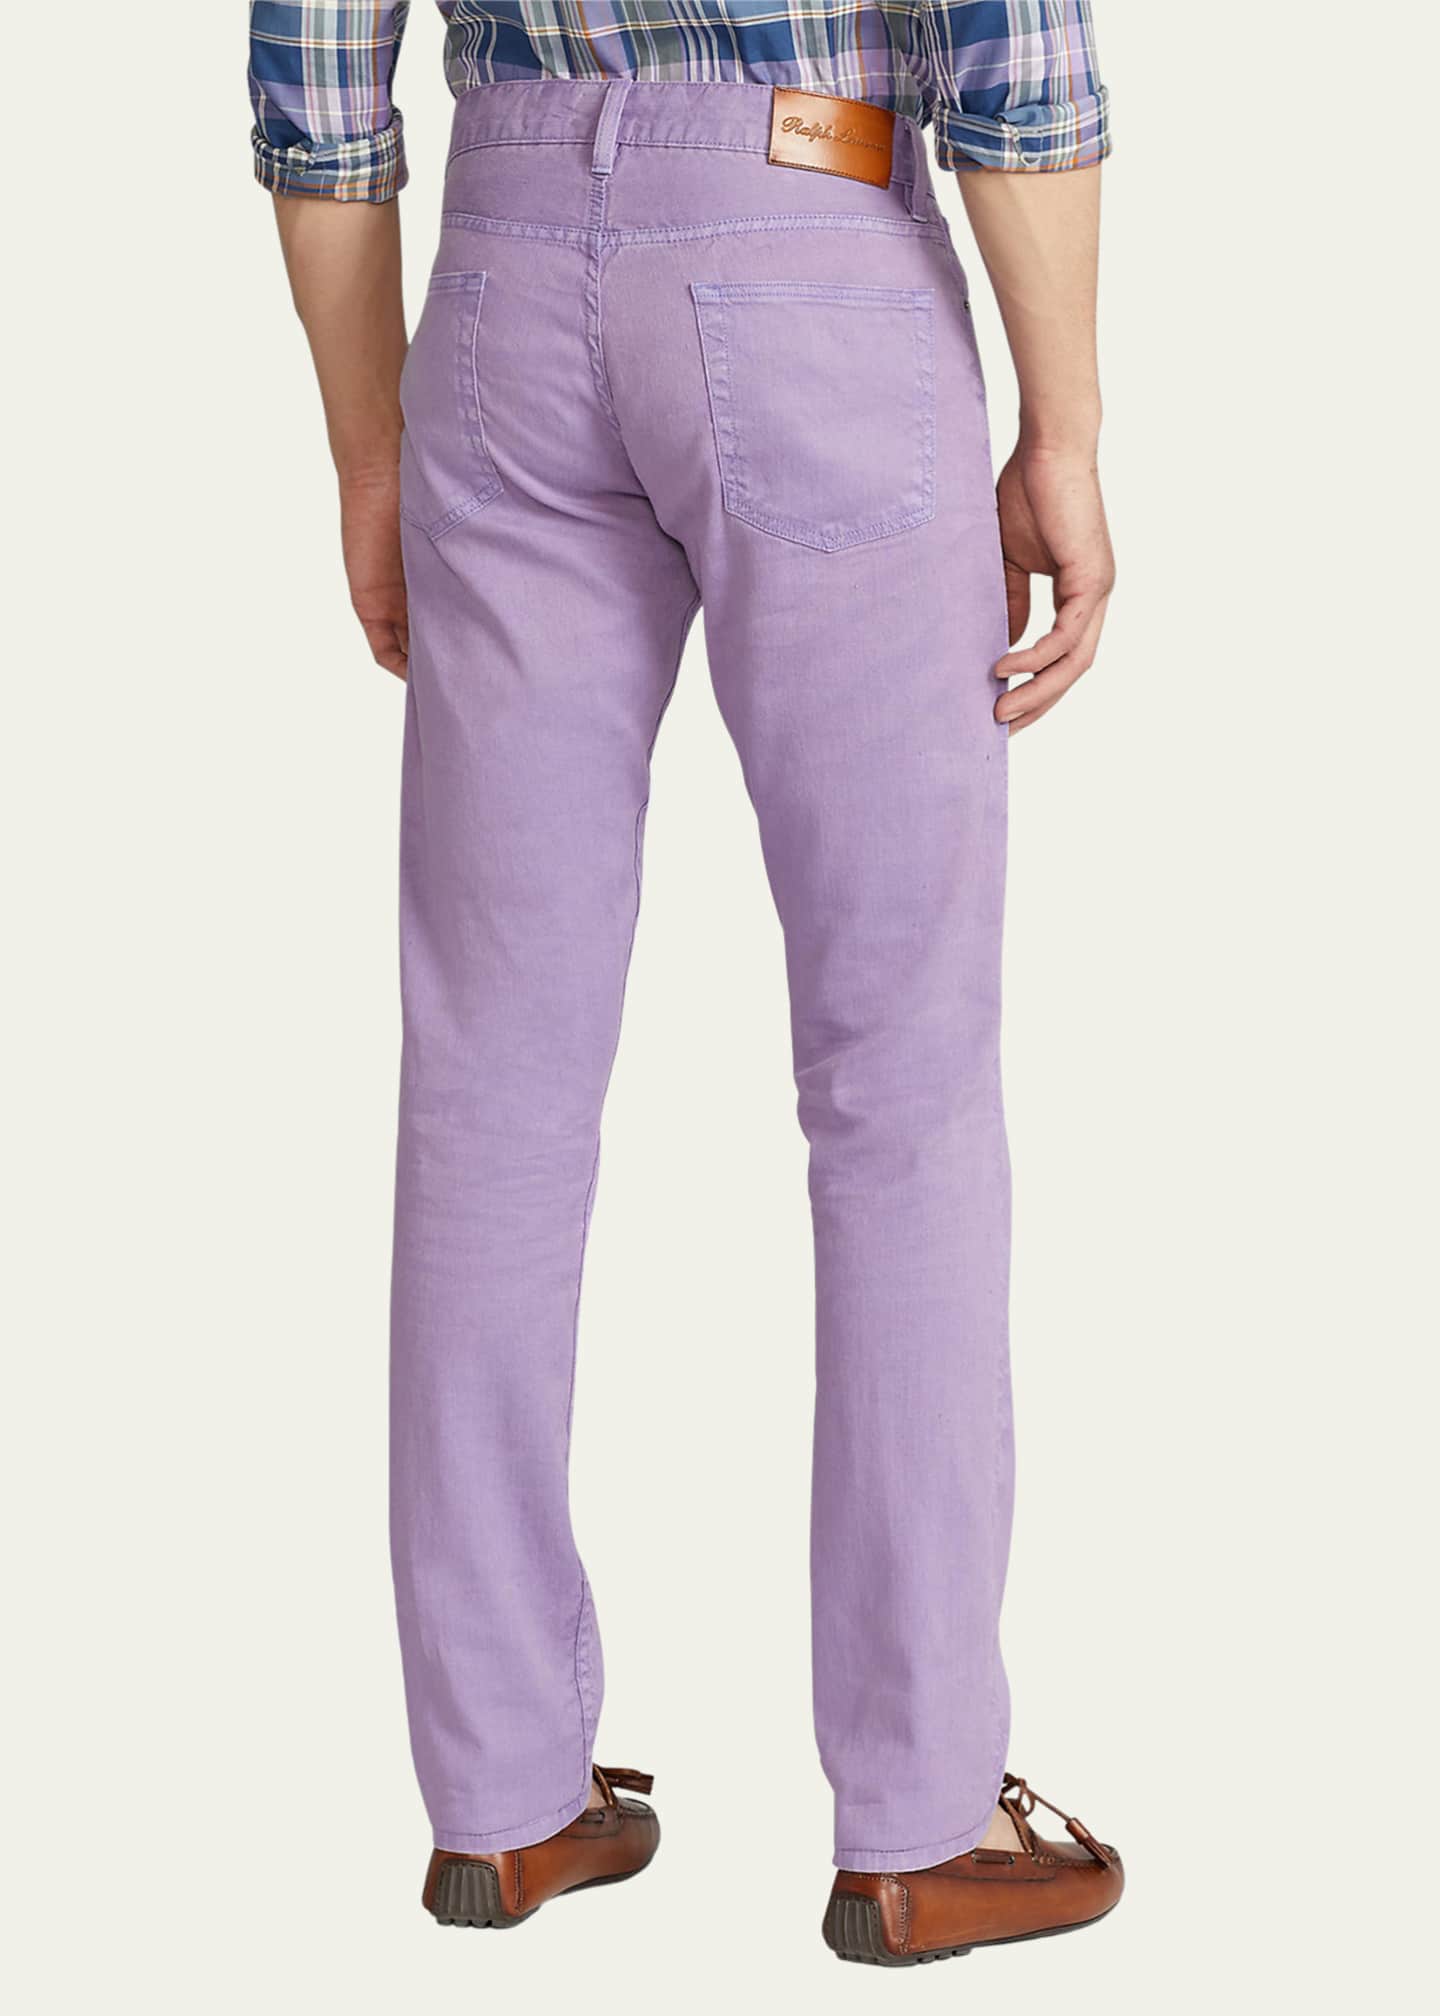 Purple Label Purple Skinny Jeans for Men